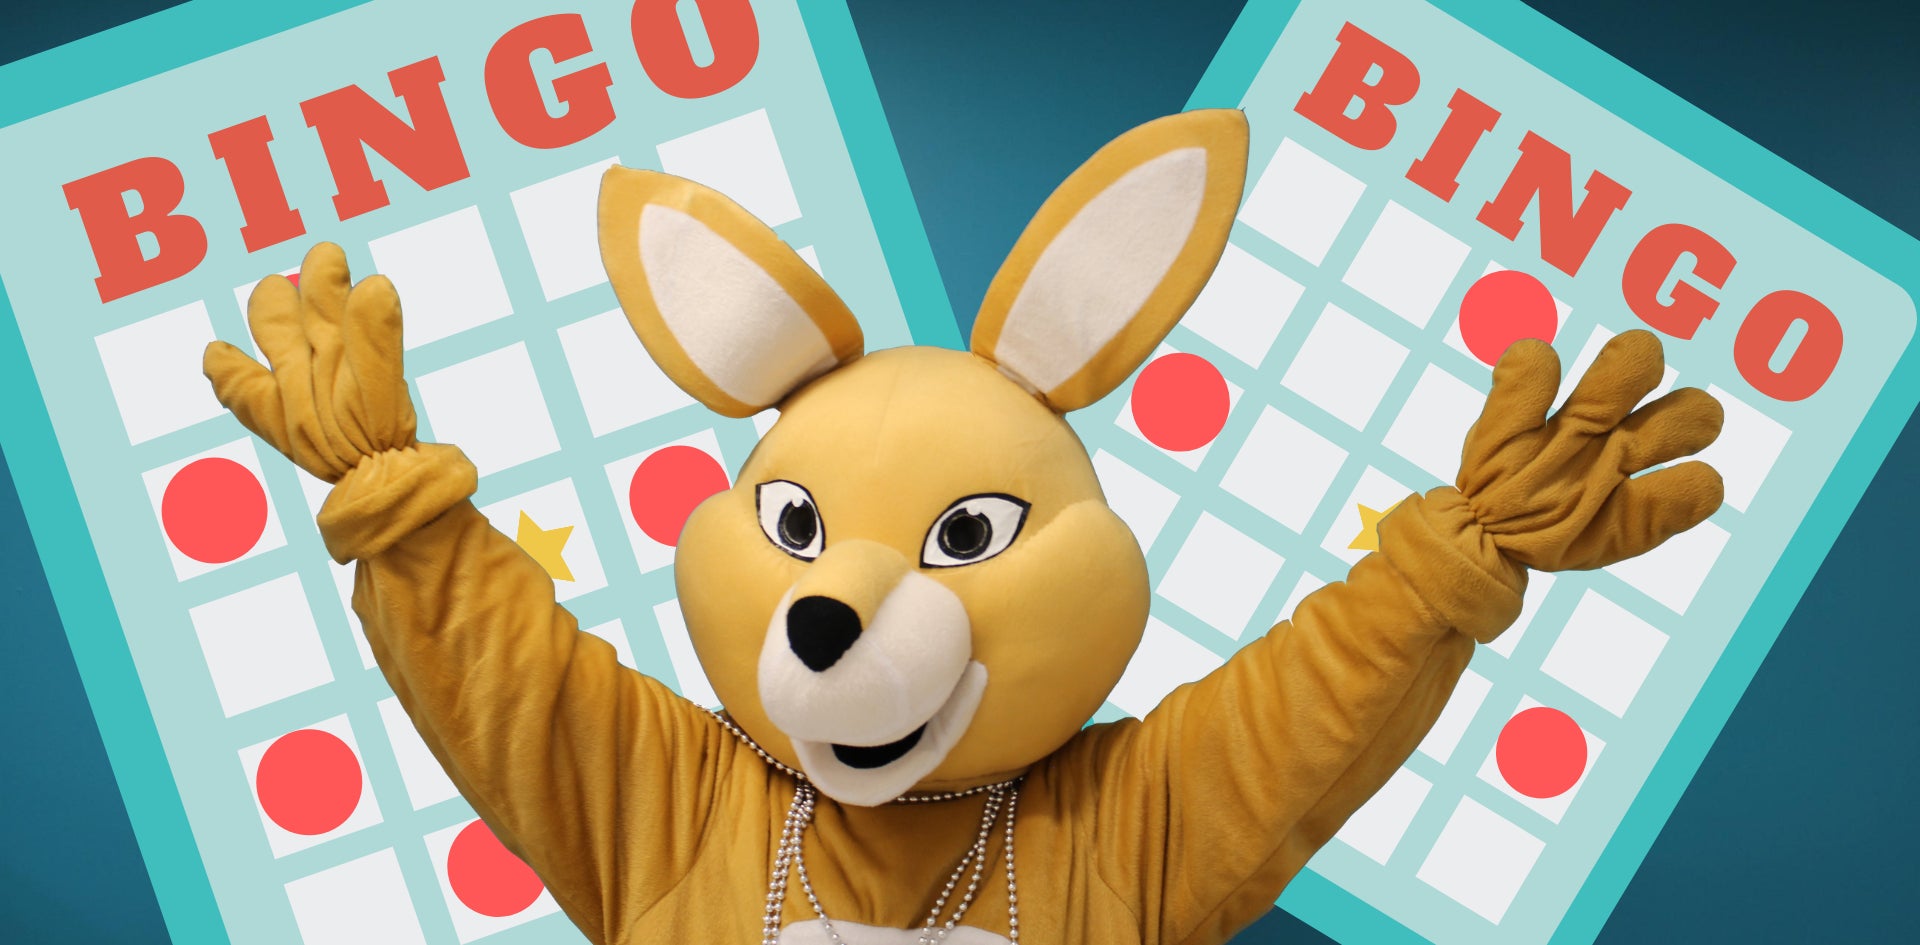 AHSSIE mascot in front of bingo cards